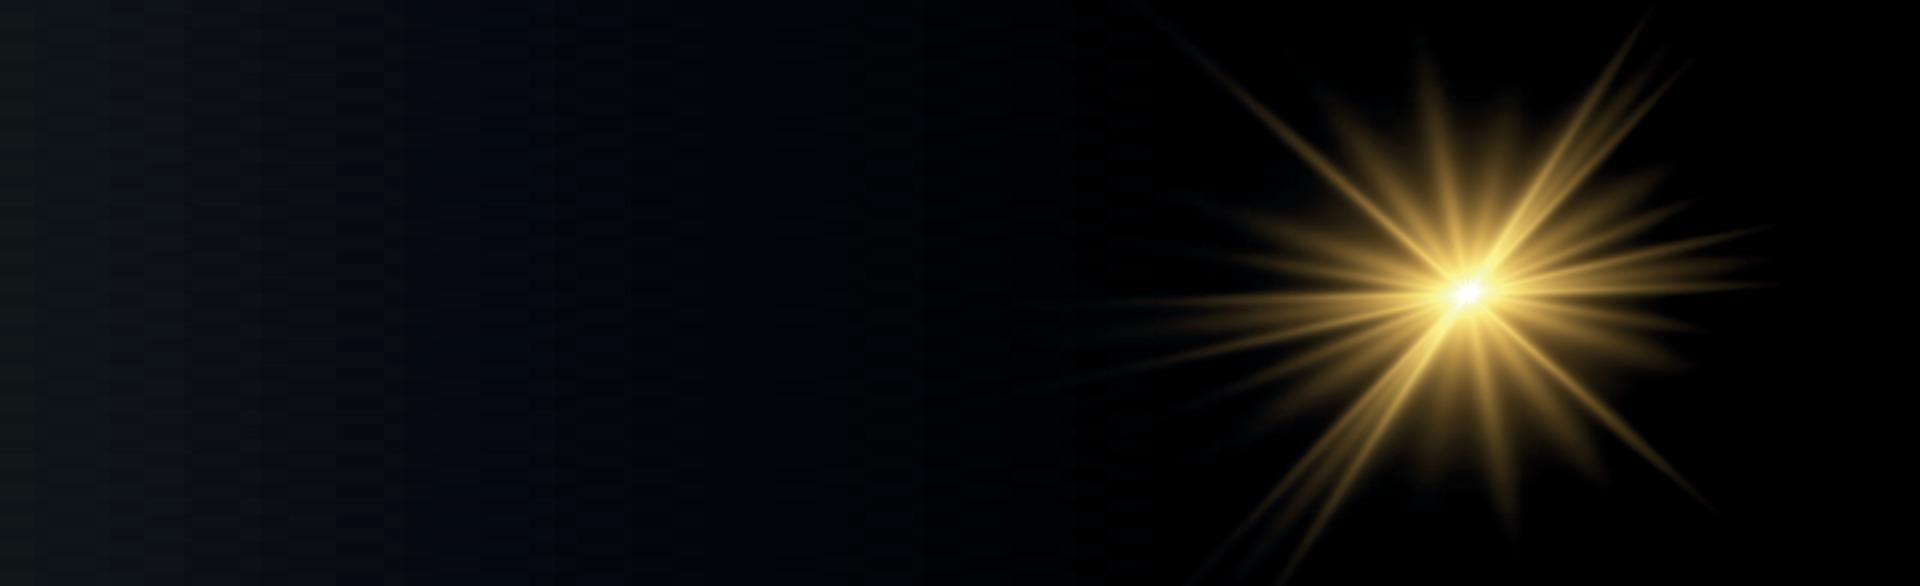 panoramabakgrundssol på svart bakgrund - illustration vektor